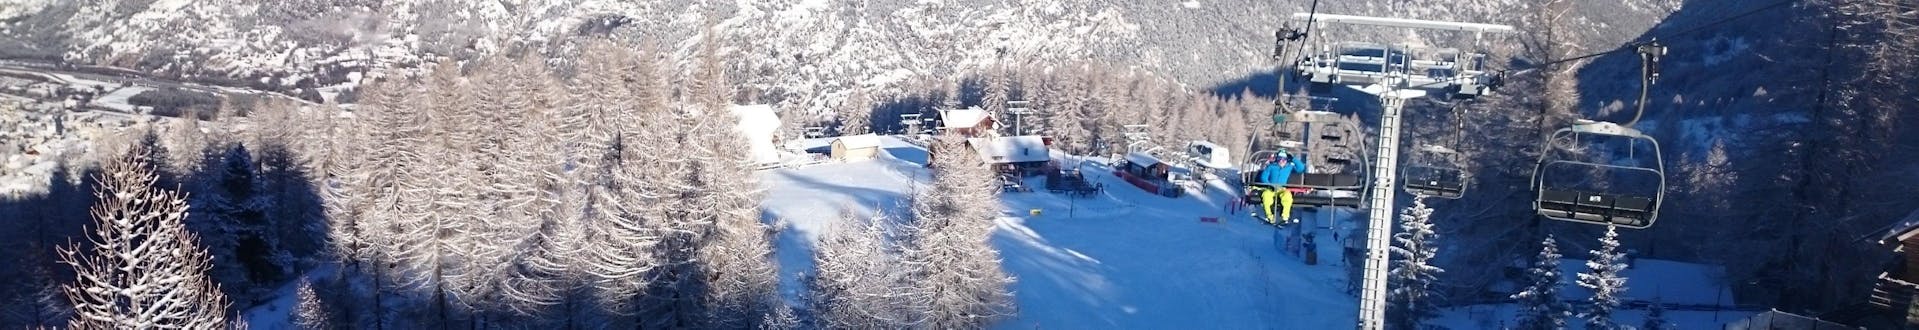 Una foto di una seggiovia nella stazione sciistica italiana di Sauze d'Oulx, che viene utilizzata dalle scuole di sci locali per i loro corsi di sci.